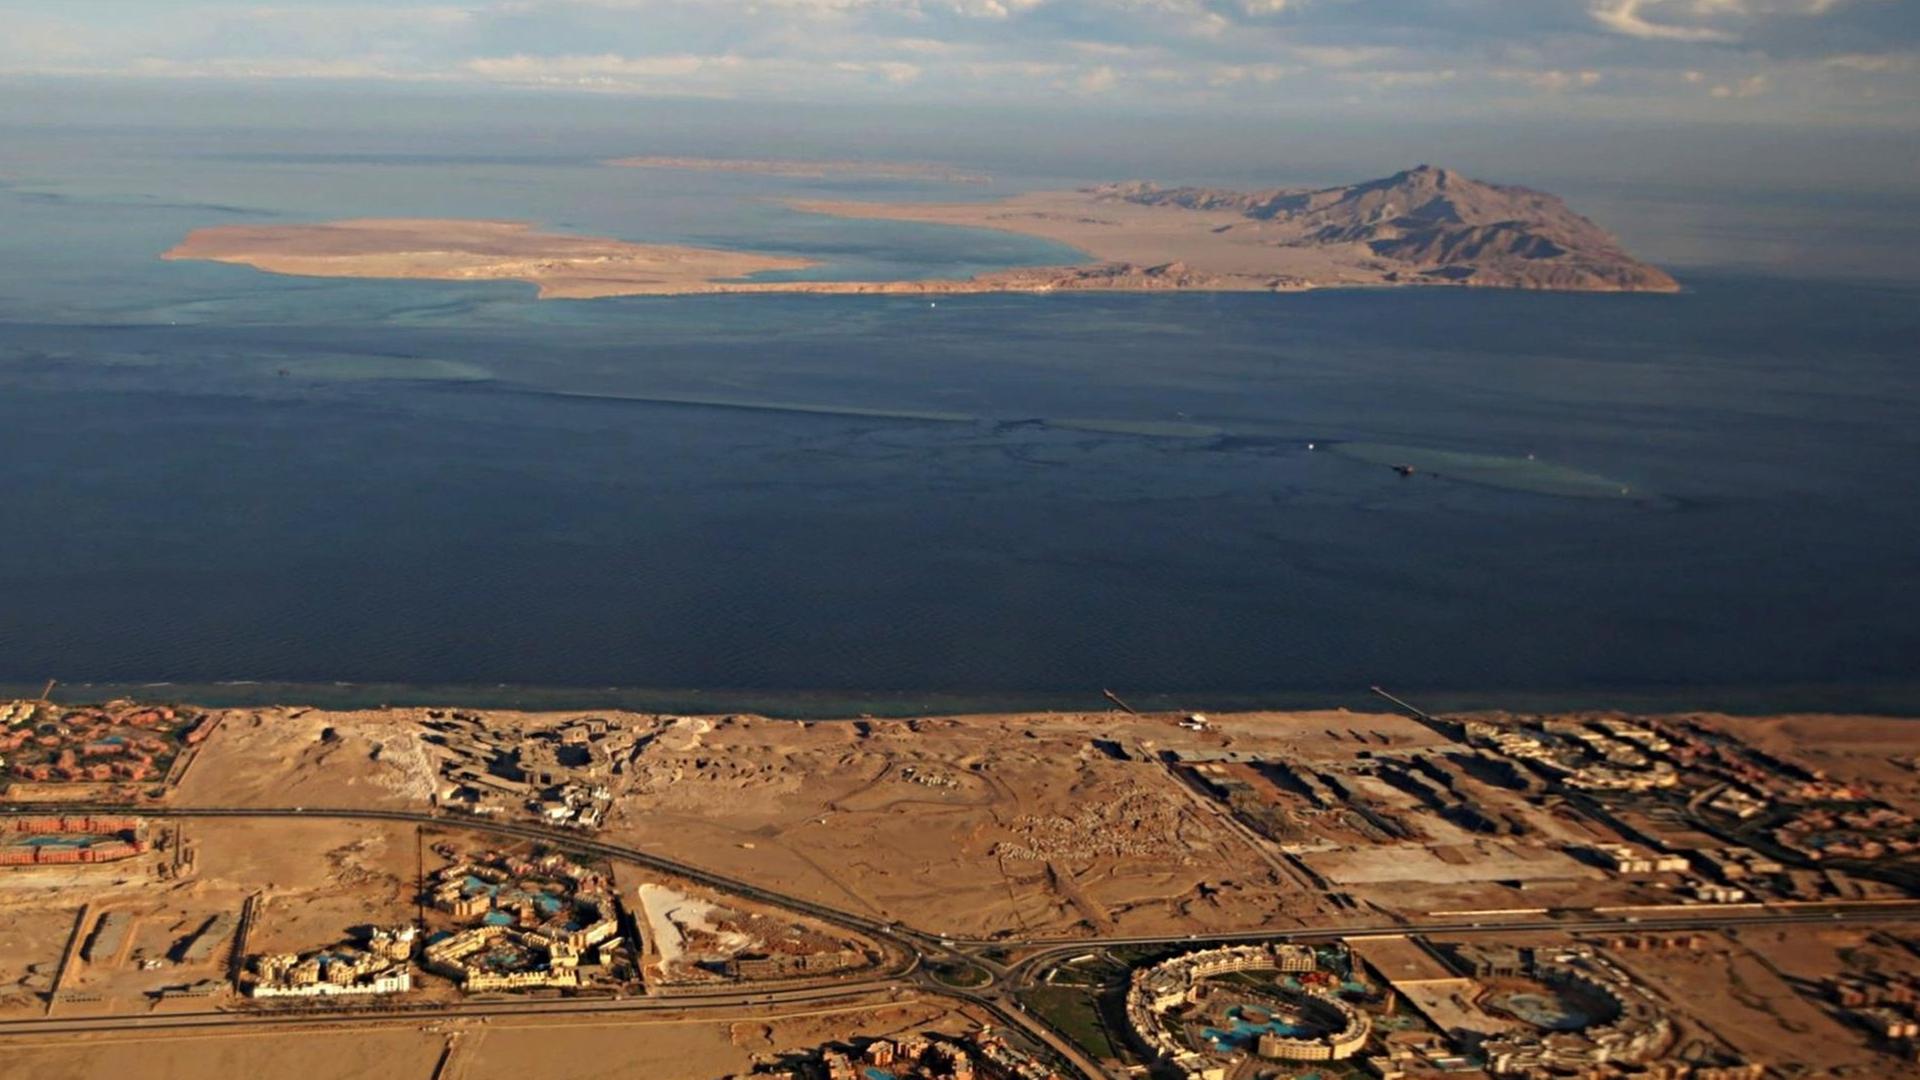 Die Aufnahme vom 14.01.2014, aus dem Fenster eines Flugzeuges aufgenommen, zeigt im Vordergrund die im Roten Meer liegende Insel Tiran und die dahinter liegende Insel Sanafir, zwischen dem ägyptischen Sinai und Saudi Arabien.